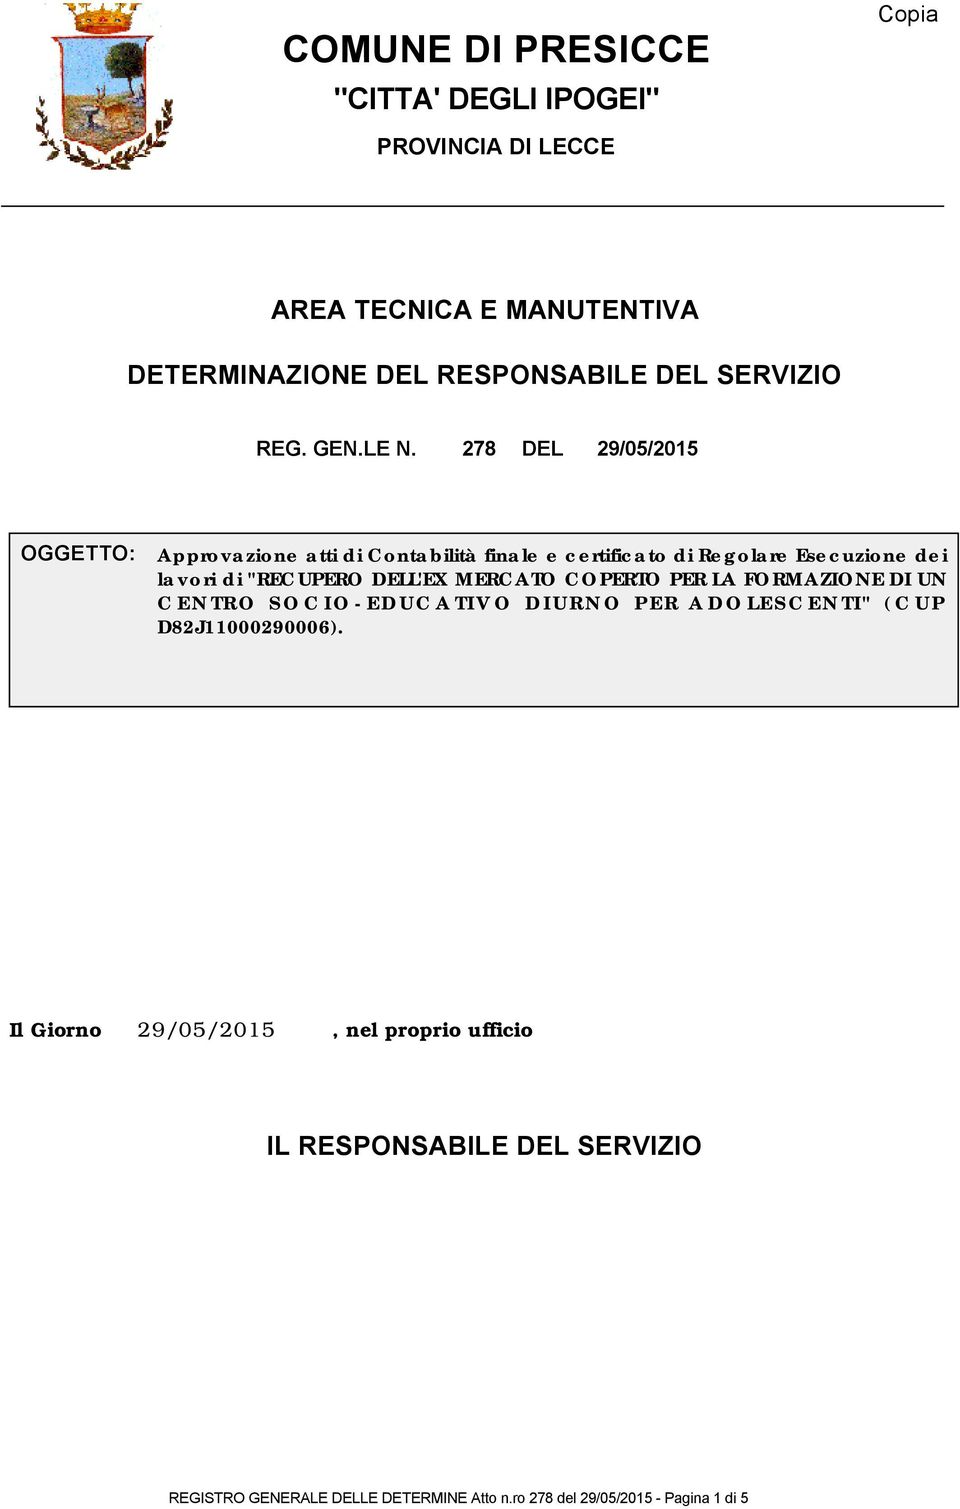 278 DEL 29/05/2015 OGGETTO: Approvazione atti di Contabilità finale e certificato di Regolare Esecuzione dei lavori di "RECUPERO